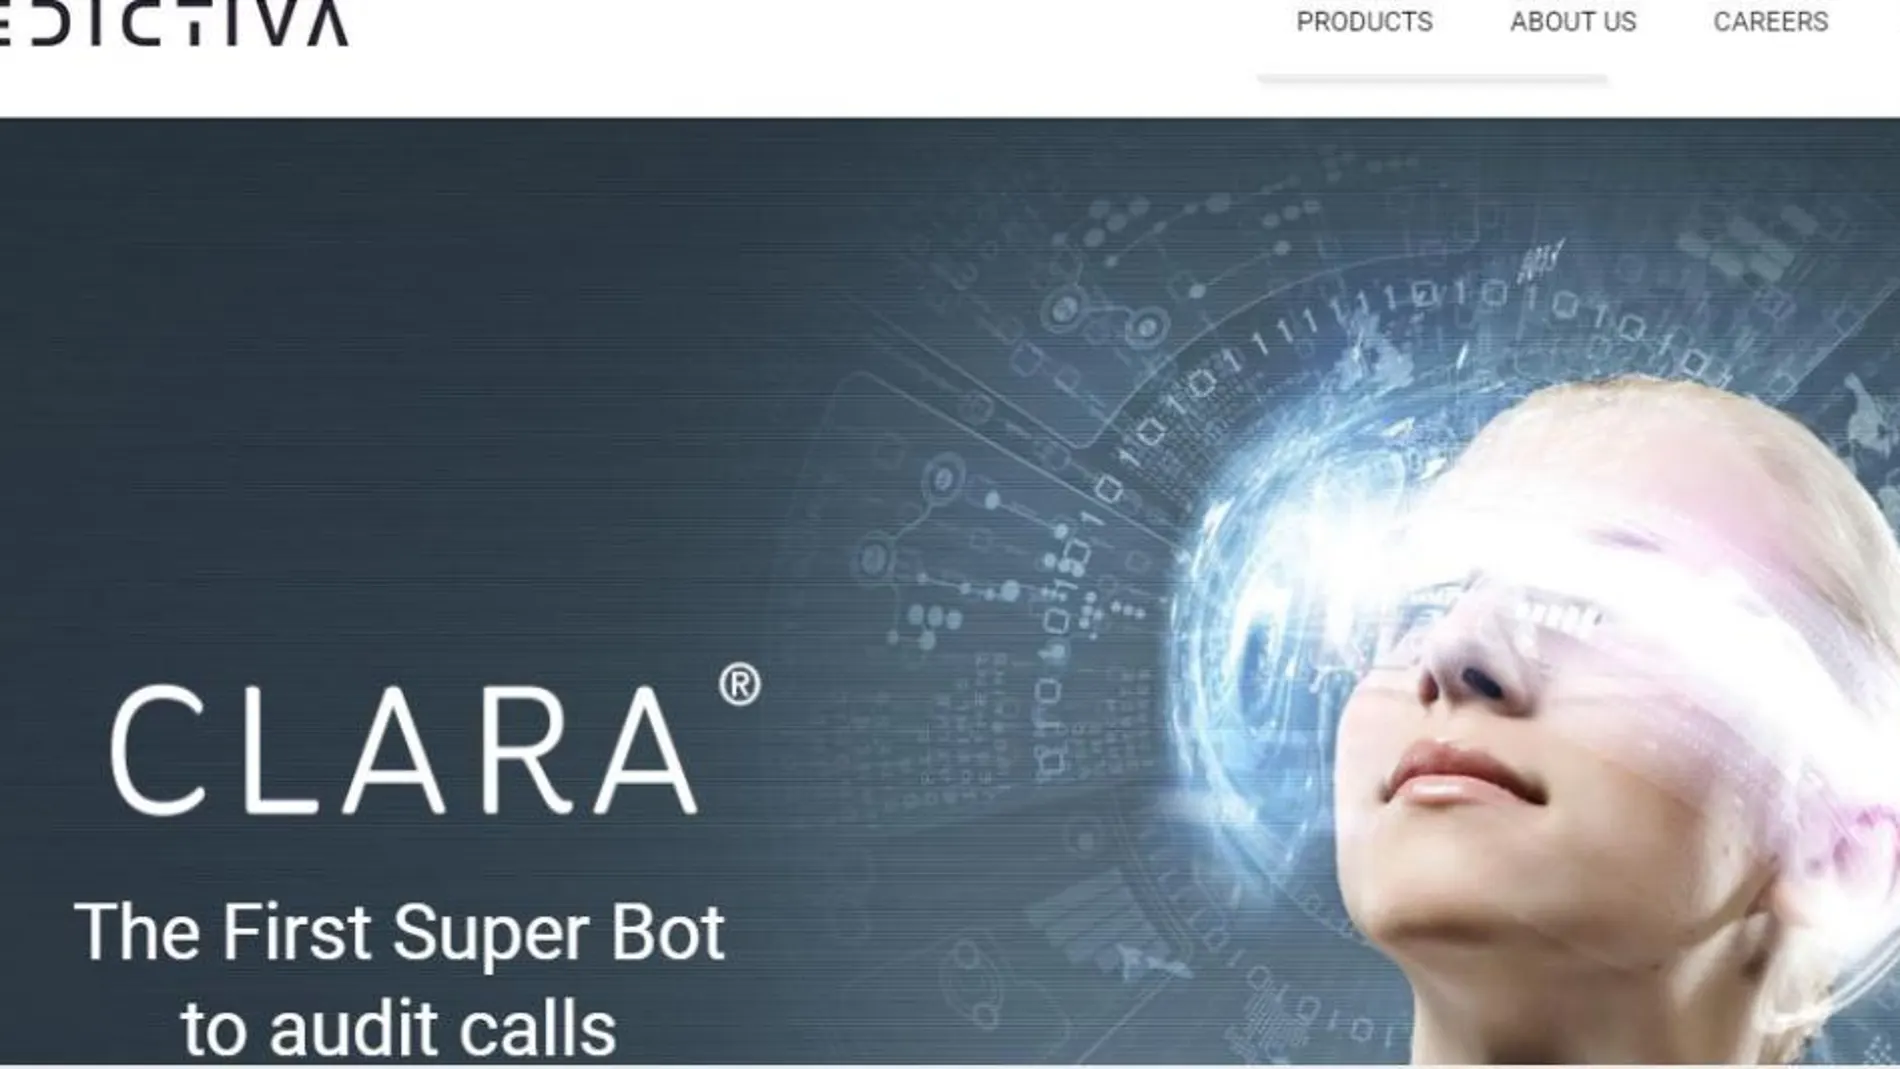 El nuevo superbot Clara